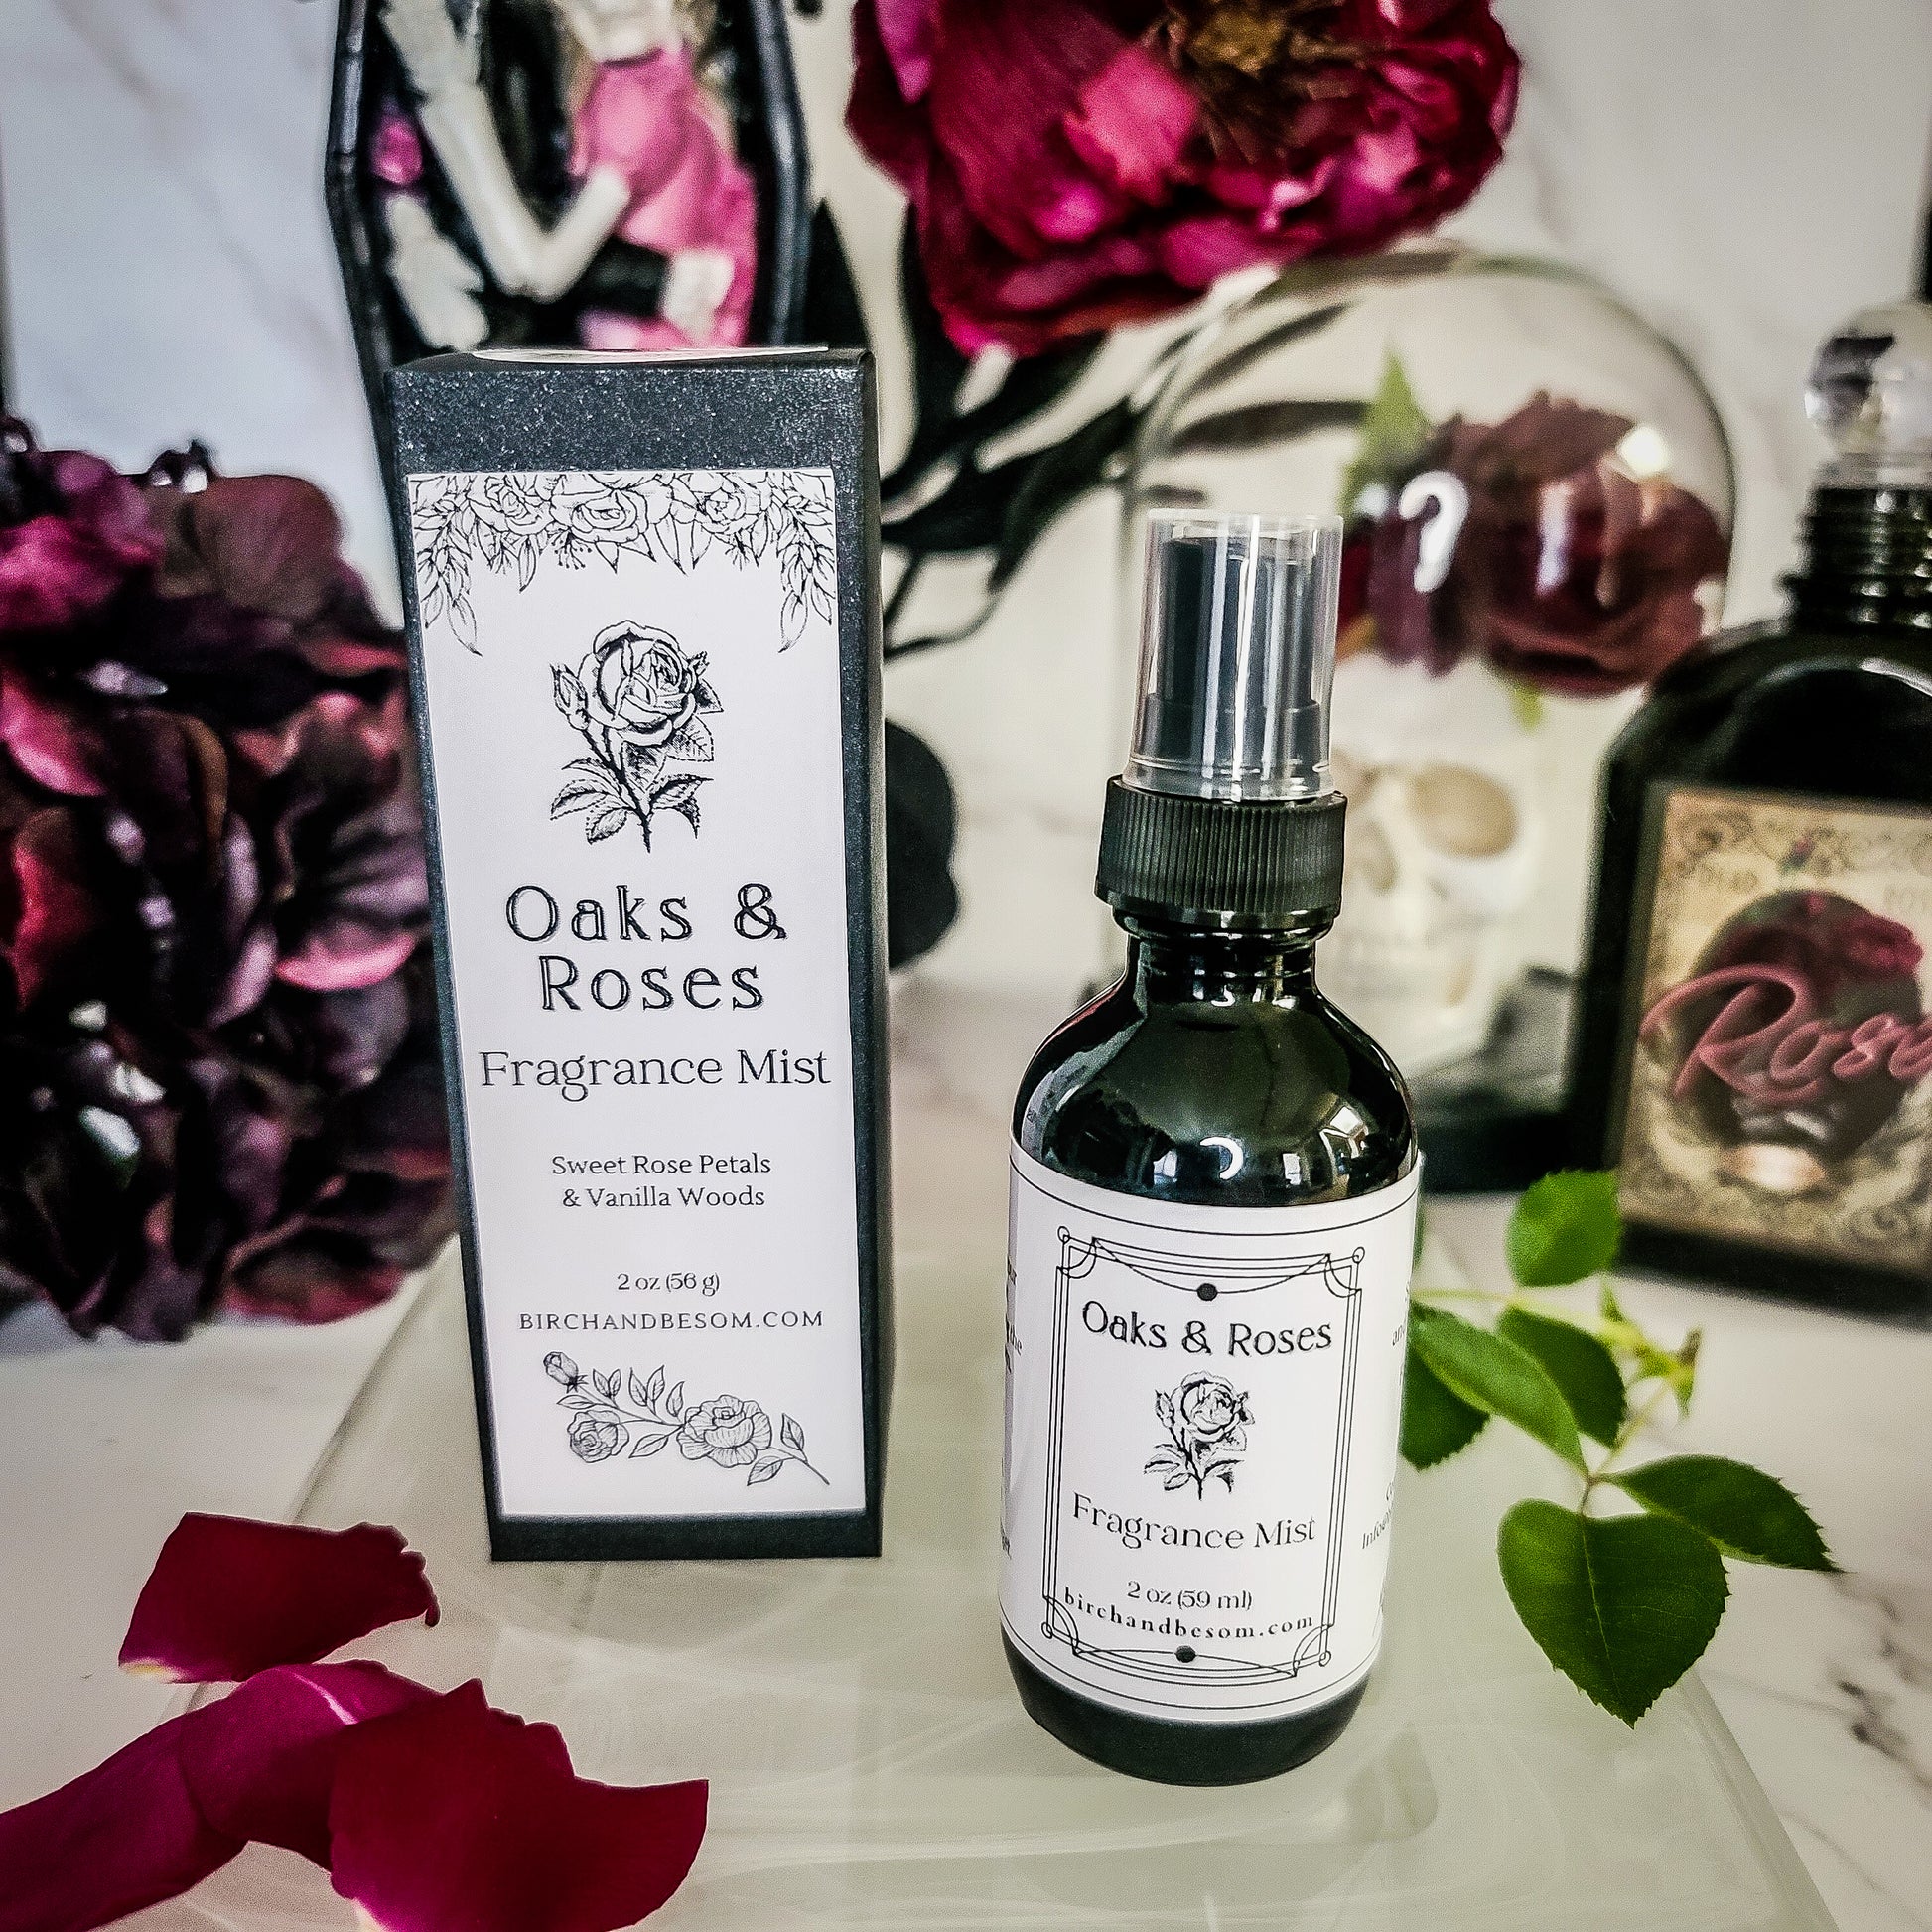 Oaks & Roses Fragrance Mist - Birch & Besom